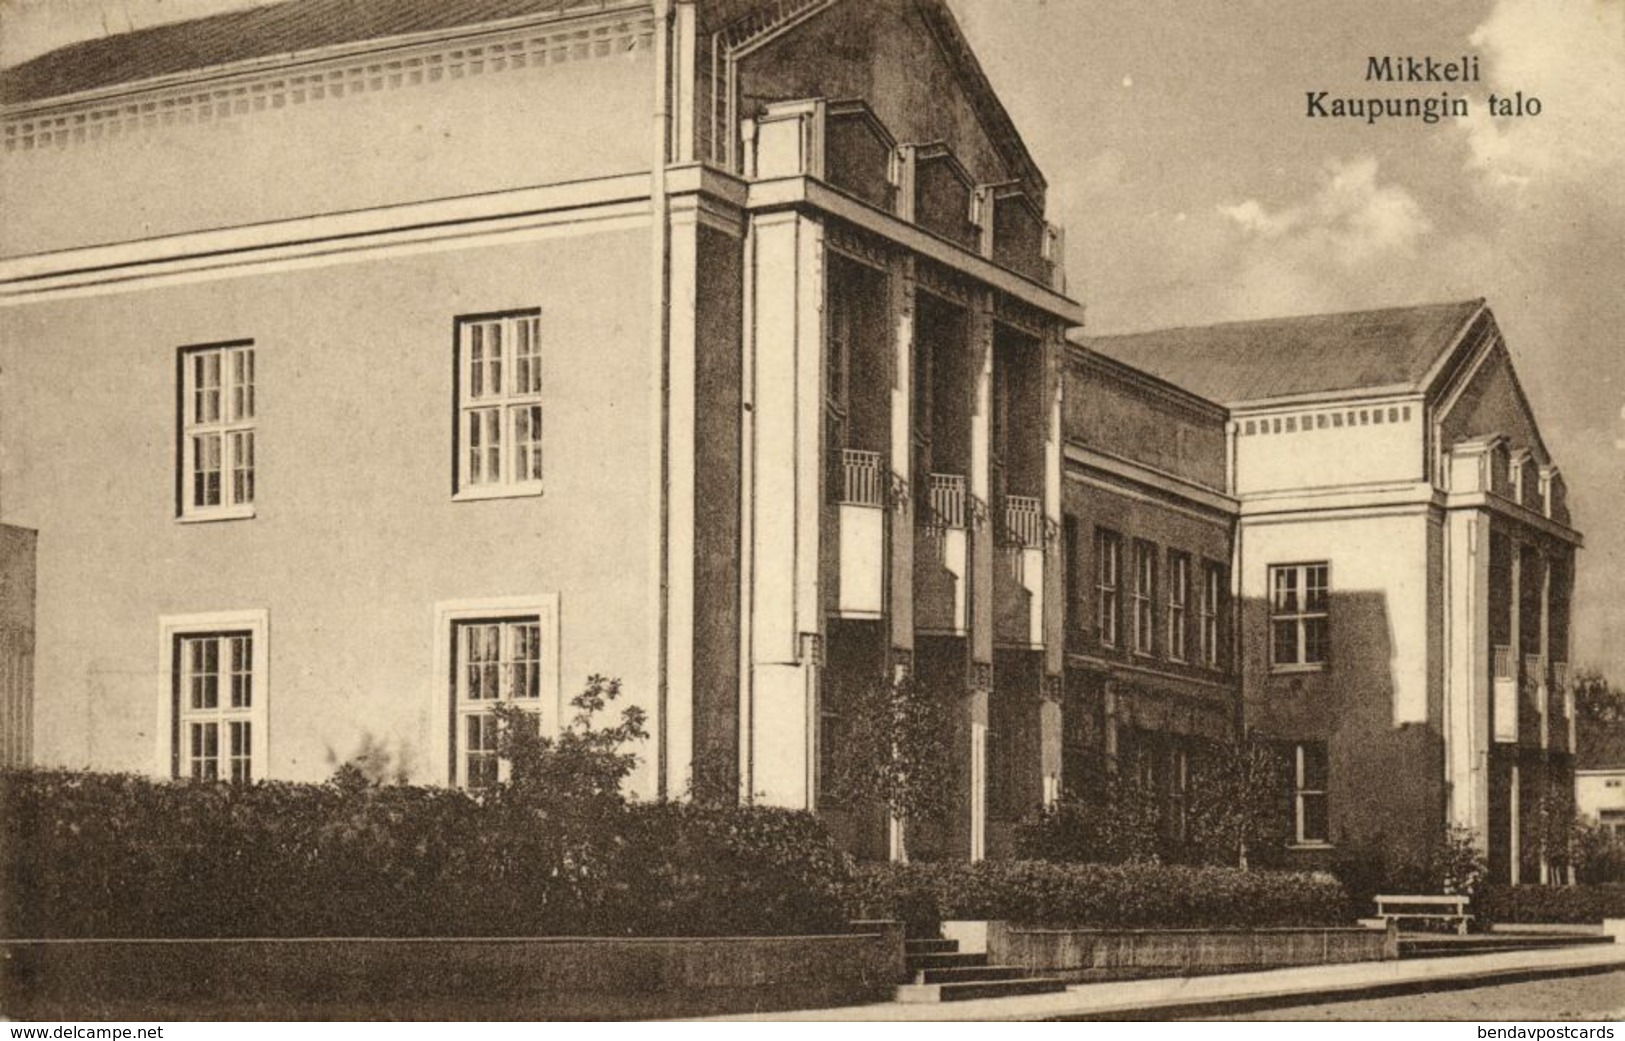 Finland Suomi, MIKKELI, Kaupungin Talo Kaupungintalo, Town Hall (1910s) Postcard - Finland